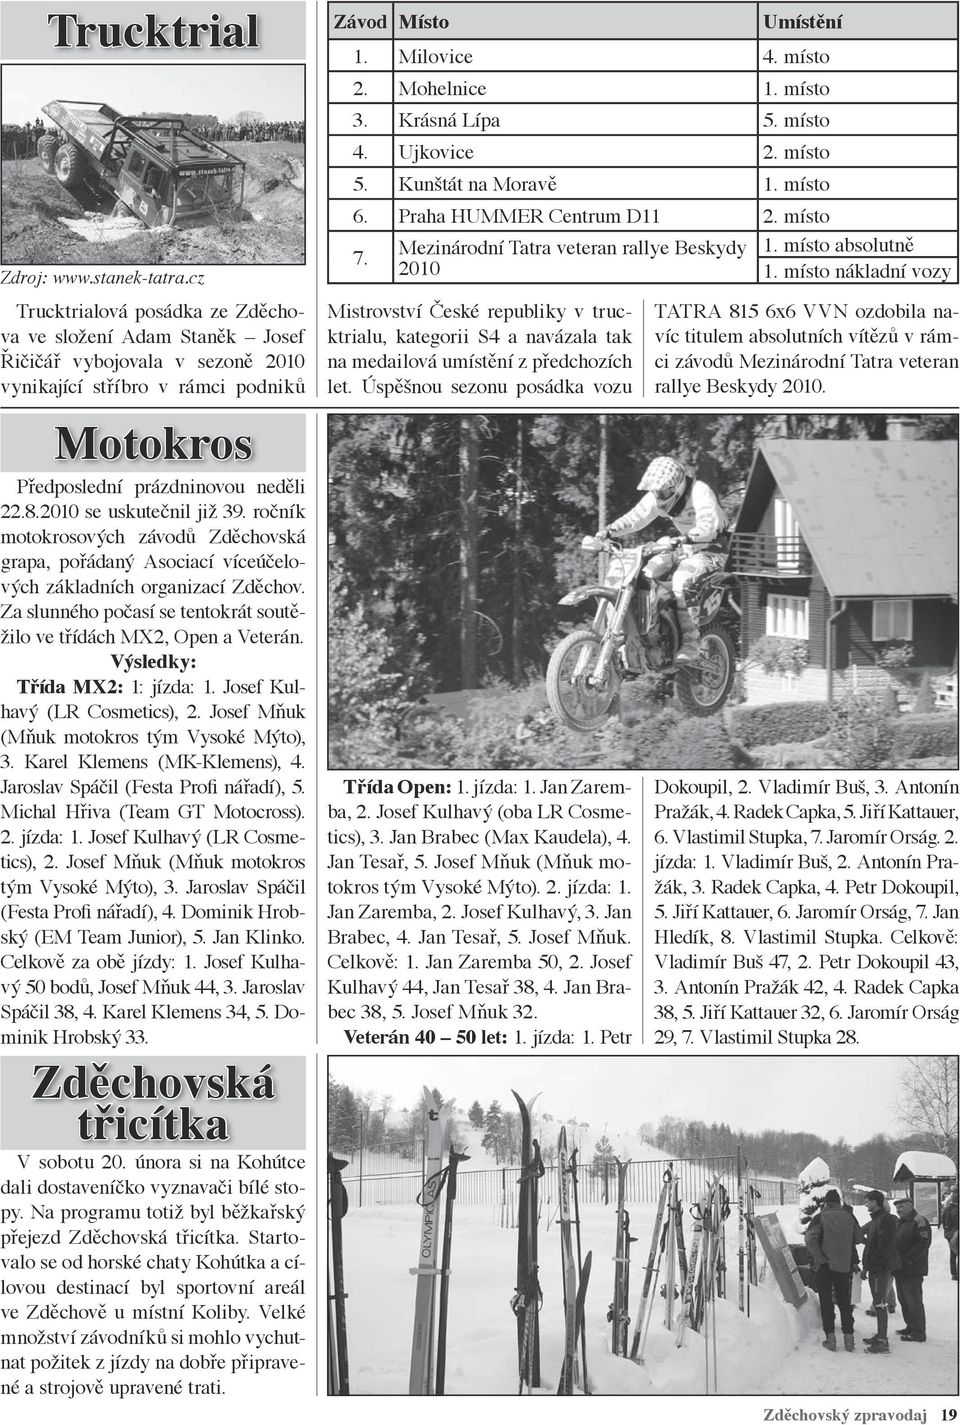 2010 se uskutečnil již 39. ročník motokrosových závodů Zděchovská grapa, pořádaný Asociací víceúčelových základních organizací Zděchov.